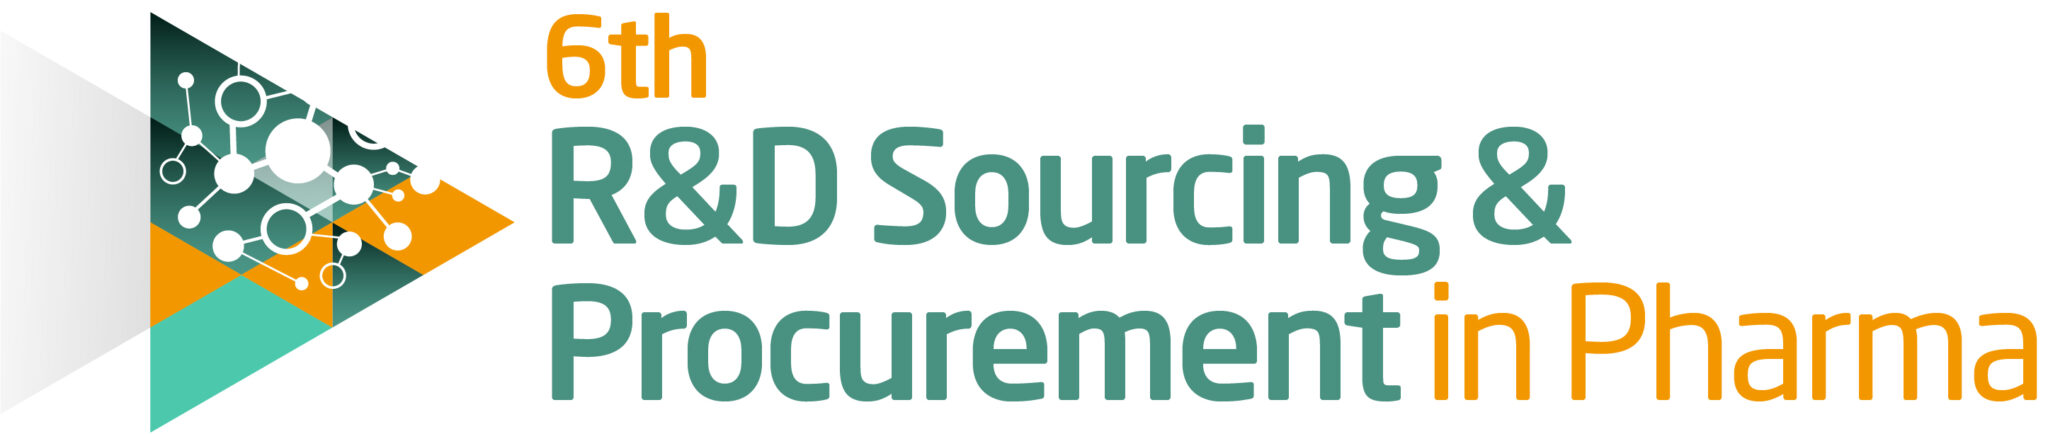 R&D procurement logo